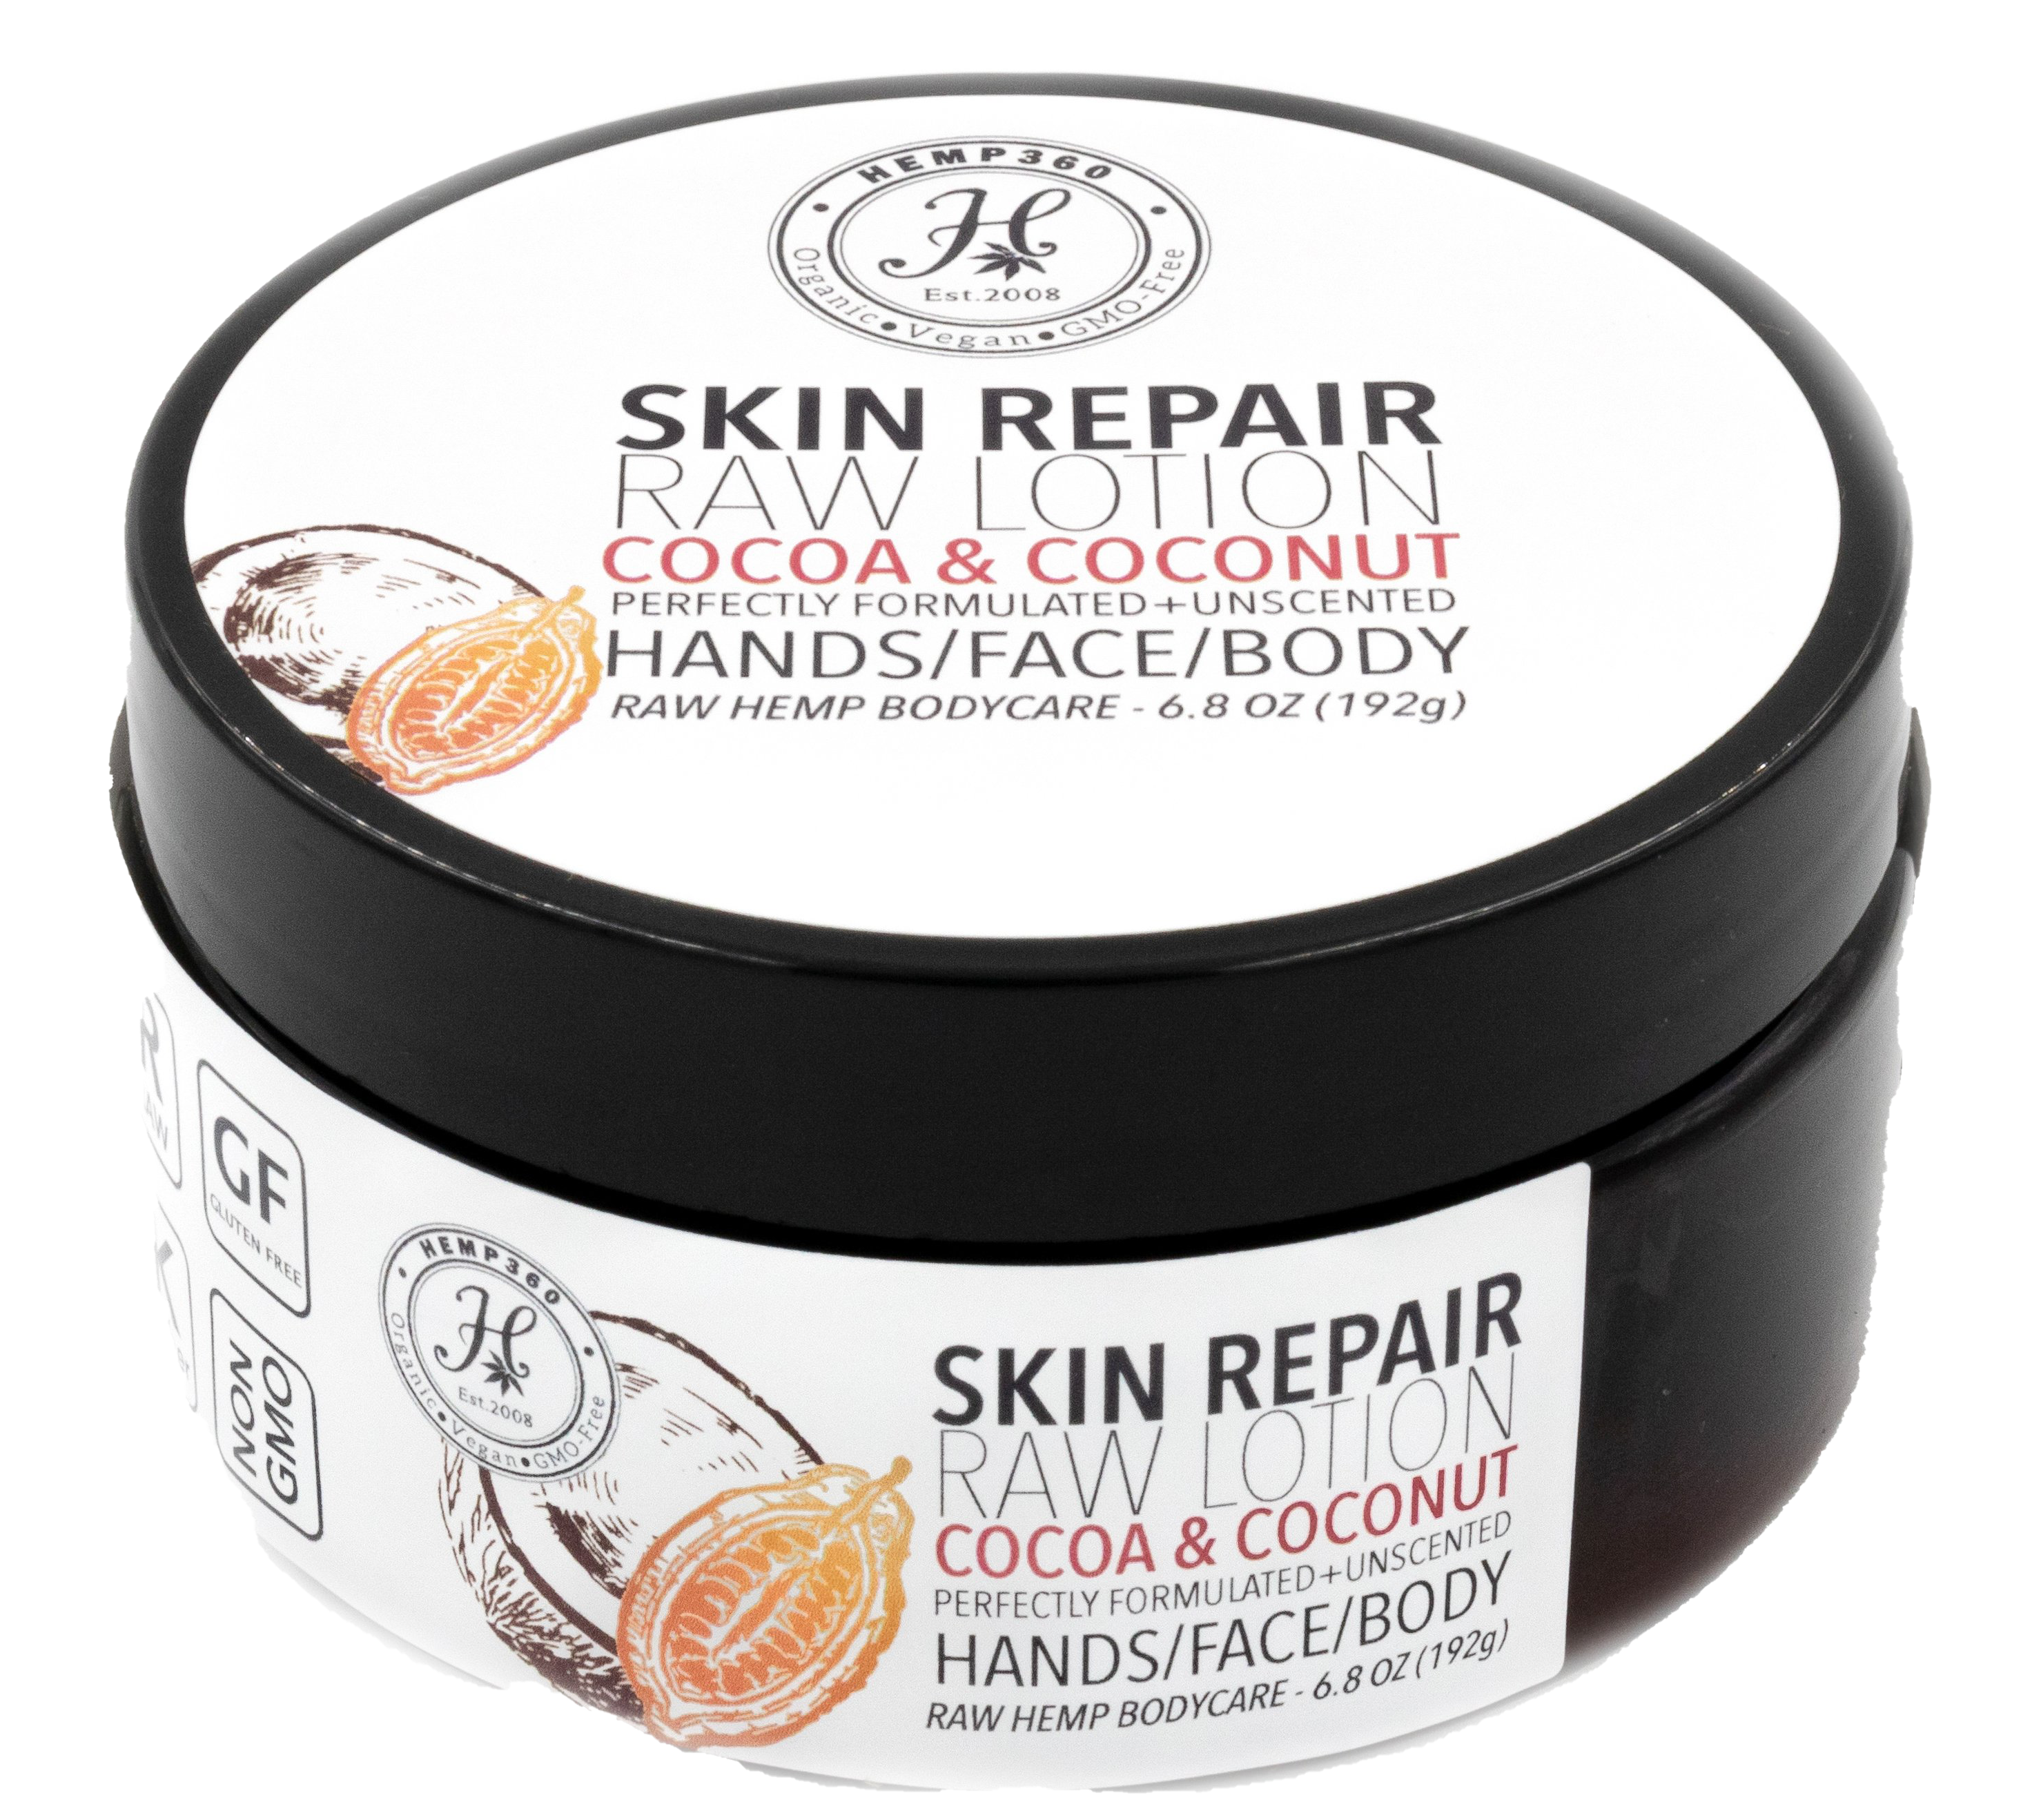 Skin Repair Raw Lotion